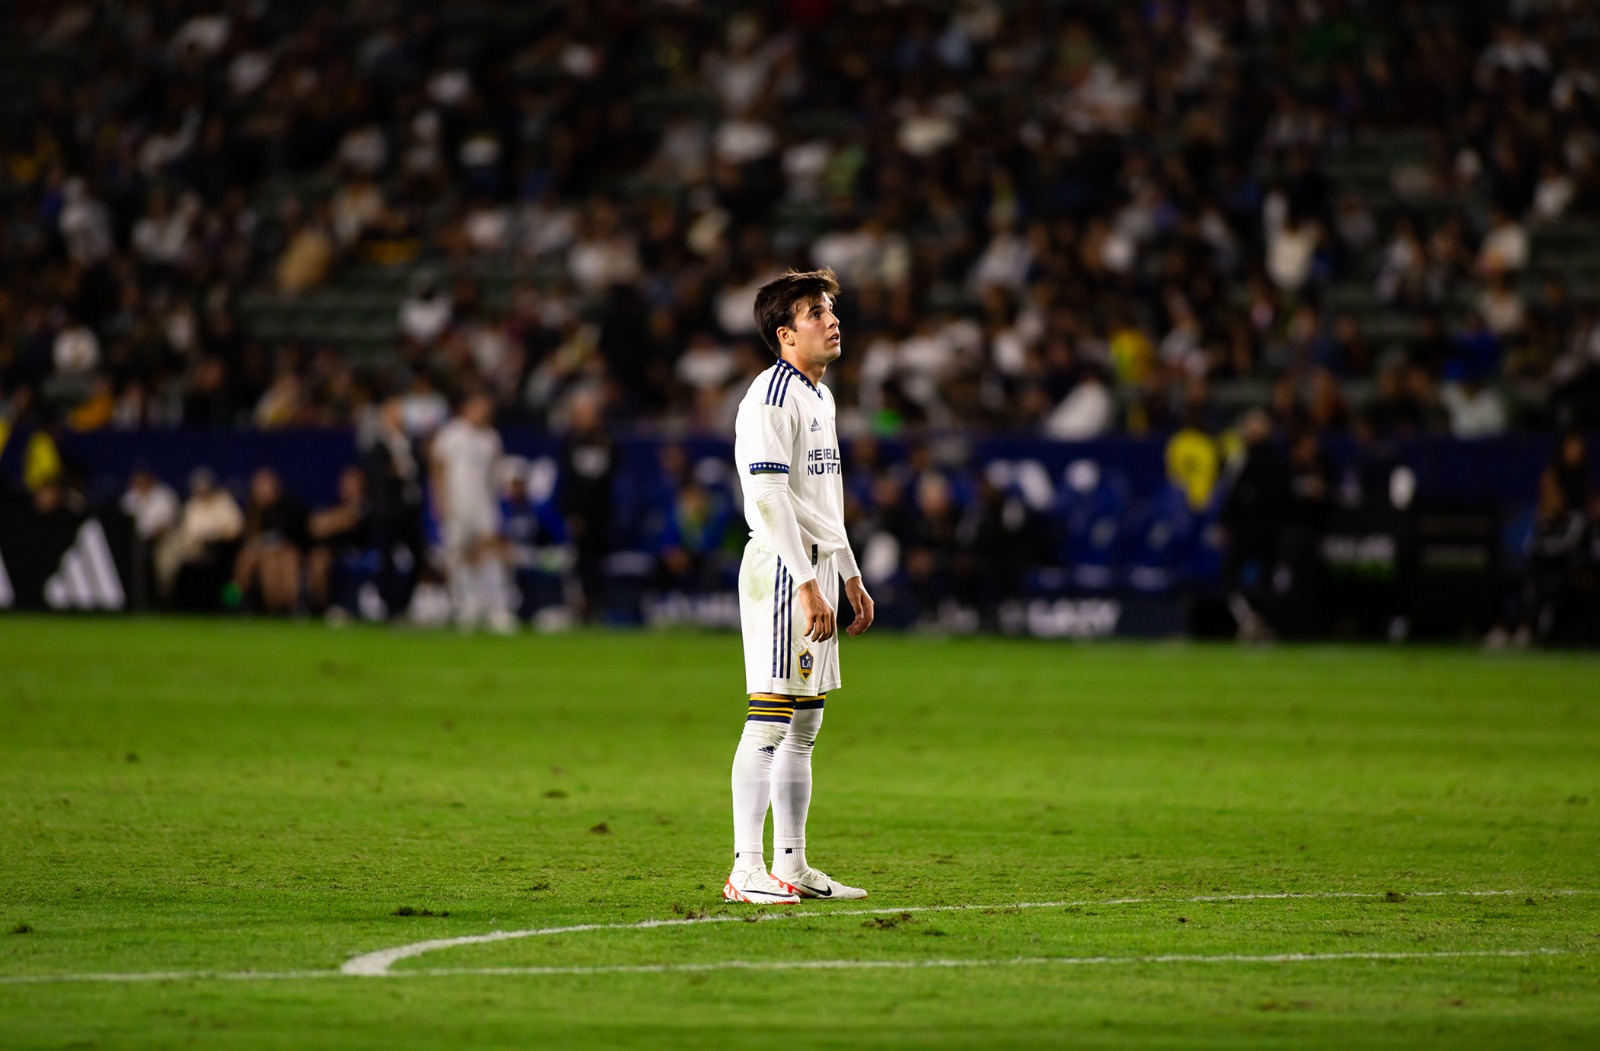 LA Galaxy cierra una desastrosa temporada en la MSL. Foto HSI/Juan Serrano